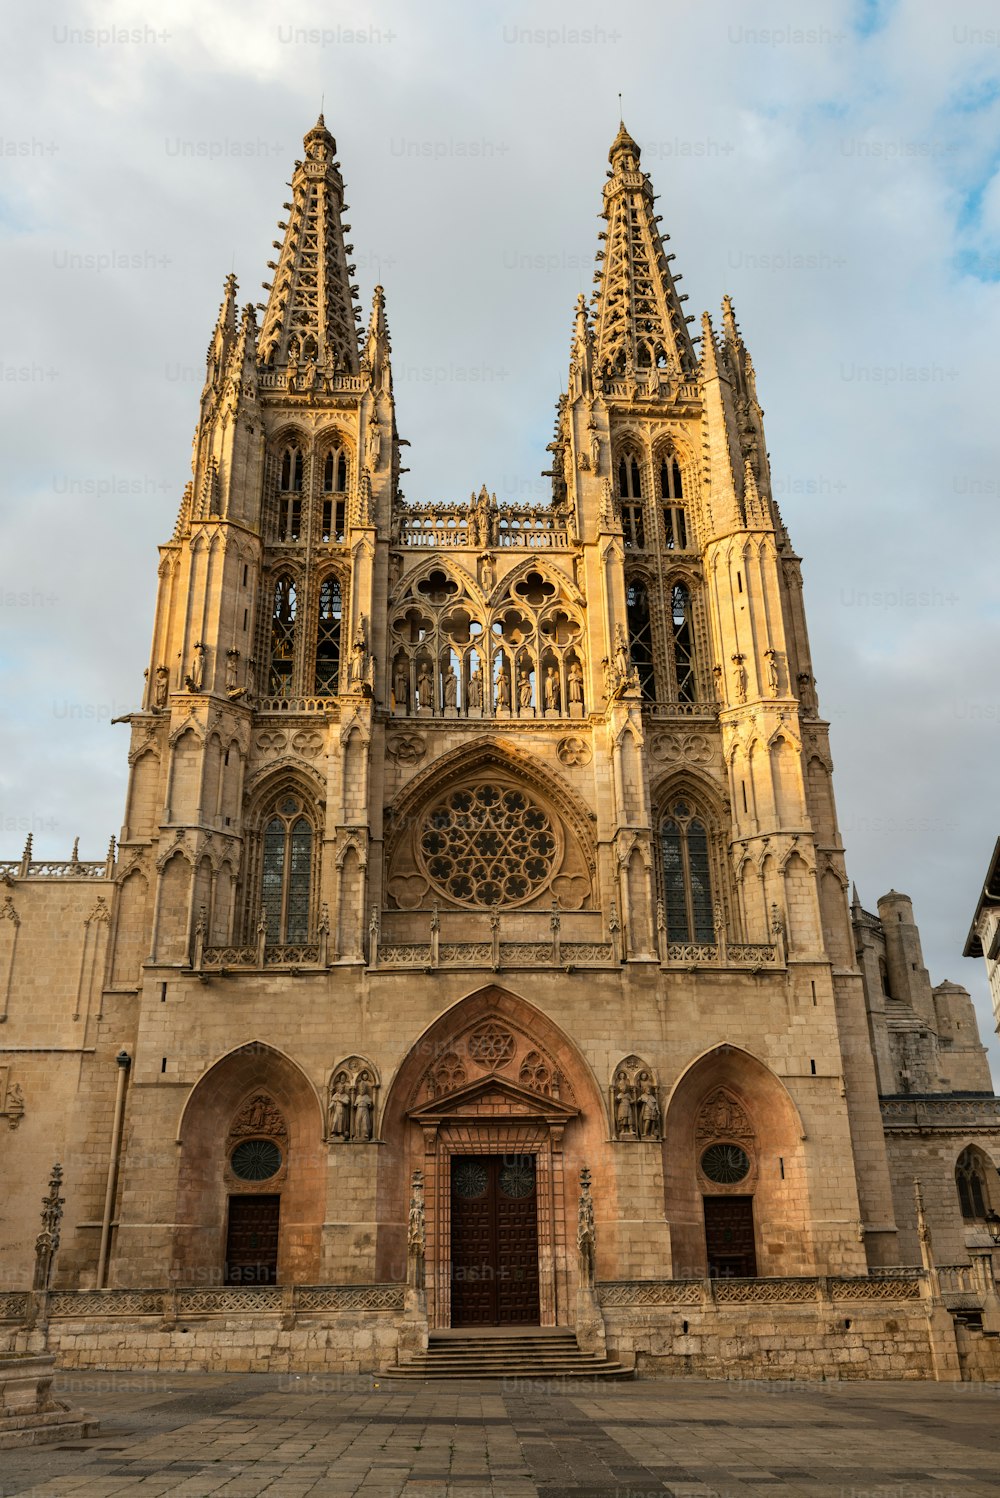 부르고스(1221-1567)에 있는 고딕 양식의 로마 가톨릭 대성당의 두 개의 서쪽 화려한 첨탑의 측면 모습은 스페인의 석양에 의해 조명됩니다.